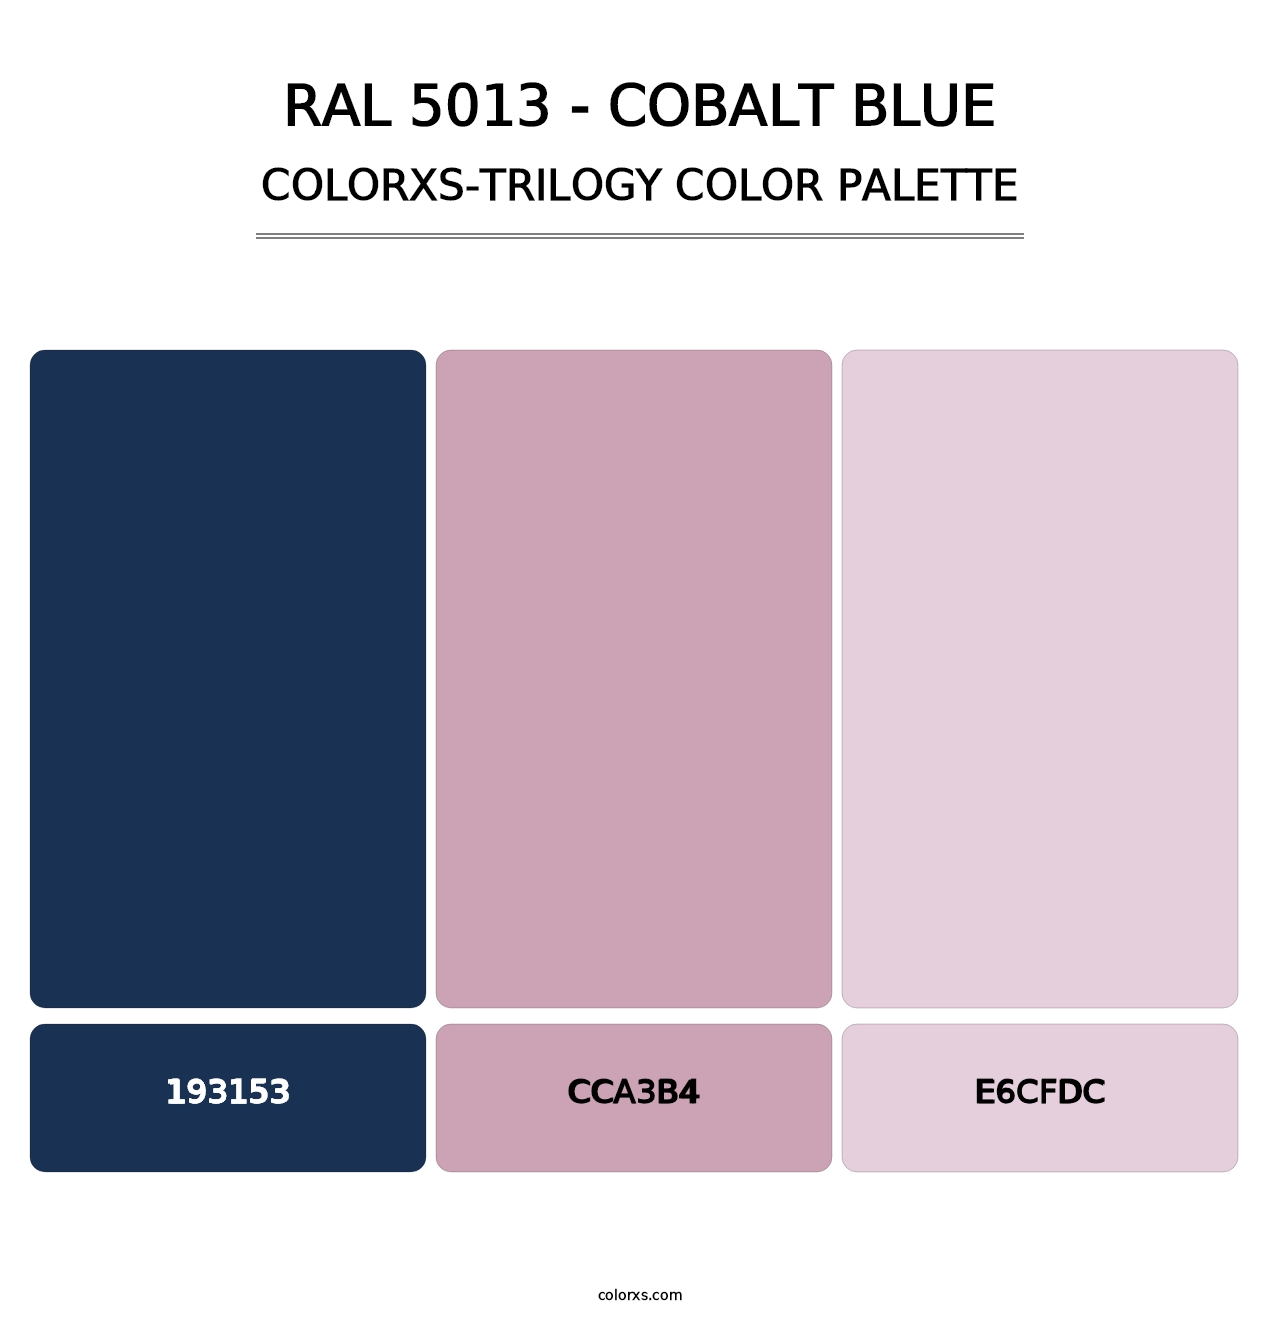 RAL 5013 - Cobalt Blue - Colorxs Trilogy Palette